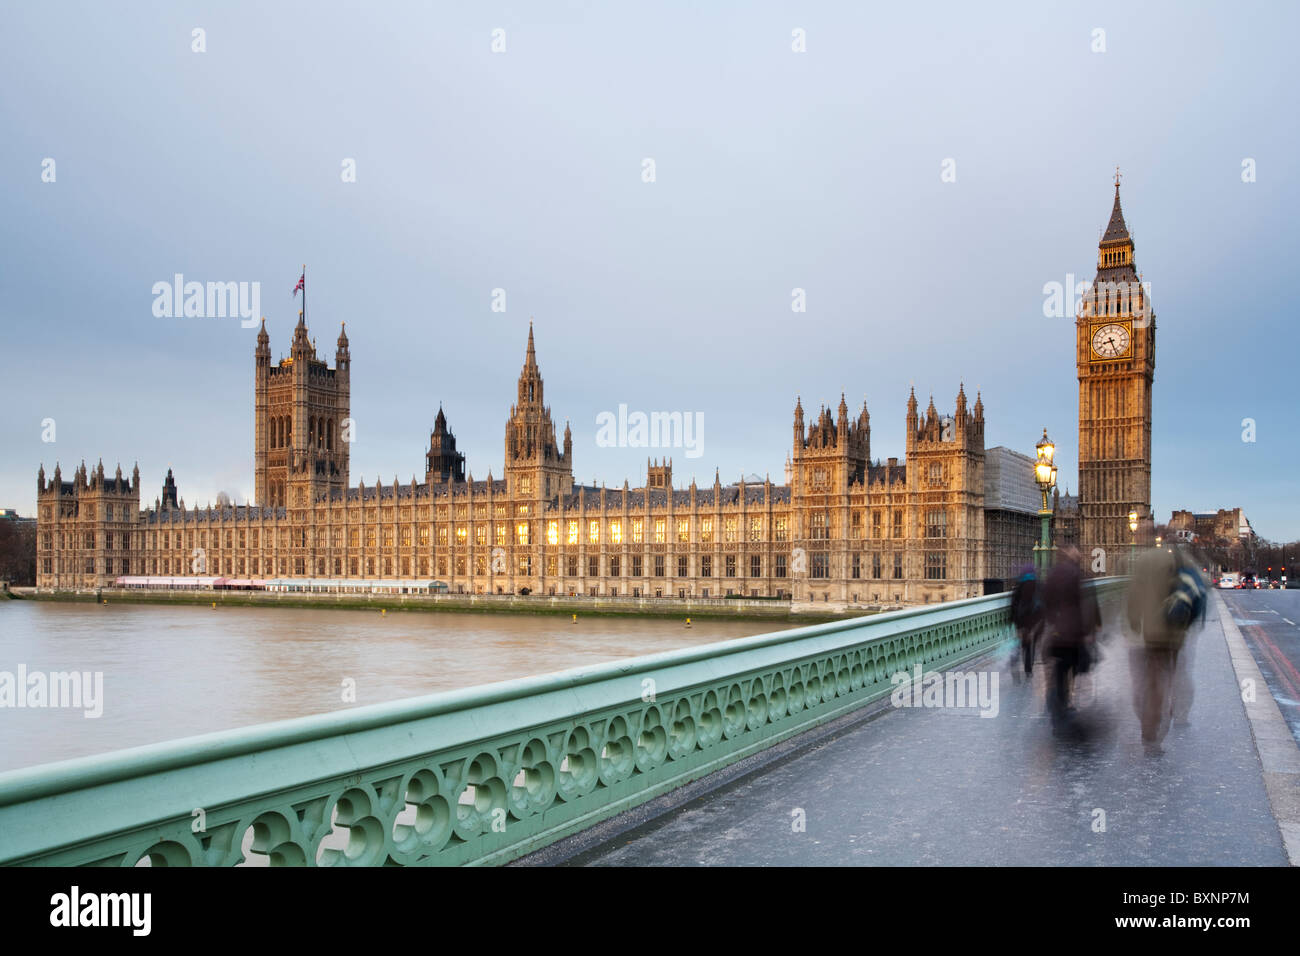 Temprano en la mañana los viajeros cruzando el puente de Westminster en un amanecer de invierno mirando hacia las Casas del Parlamento, London, UK Foto de stock